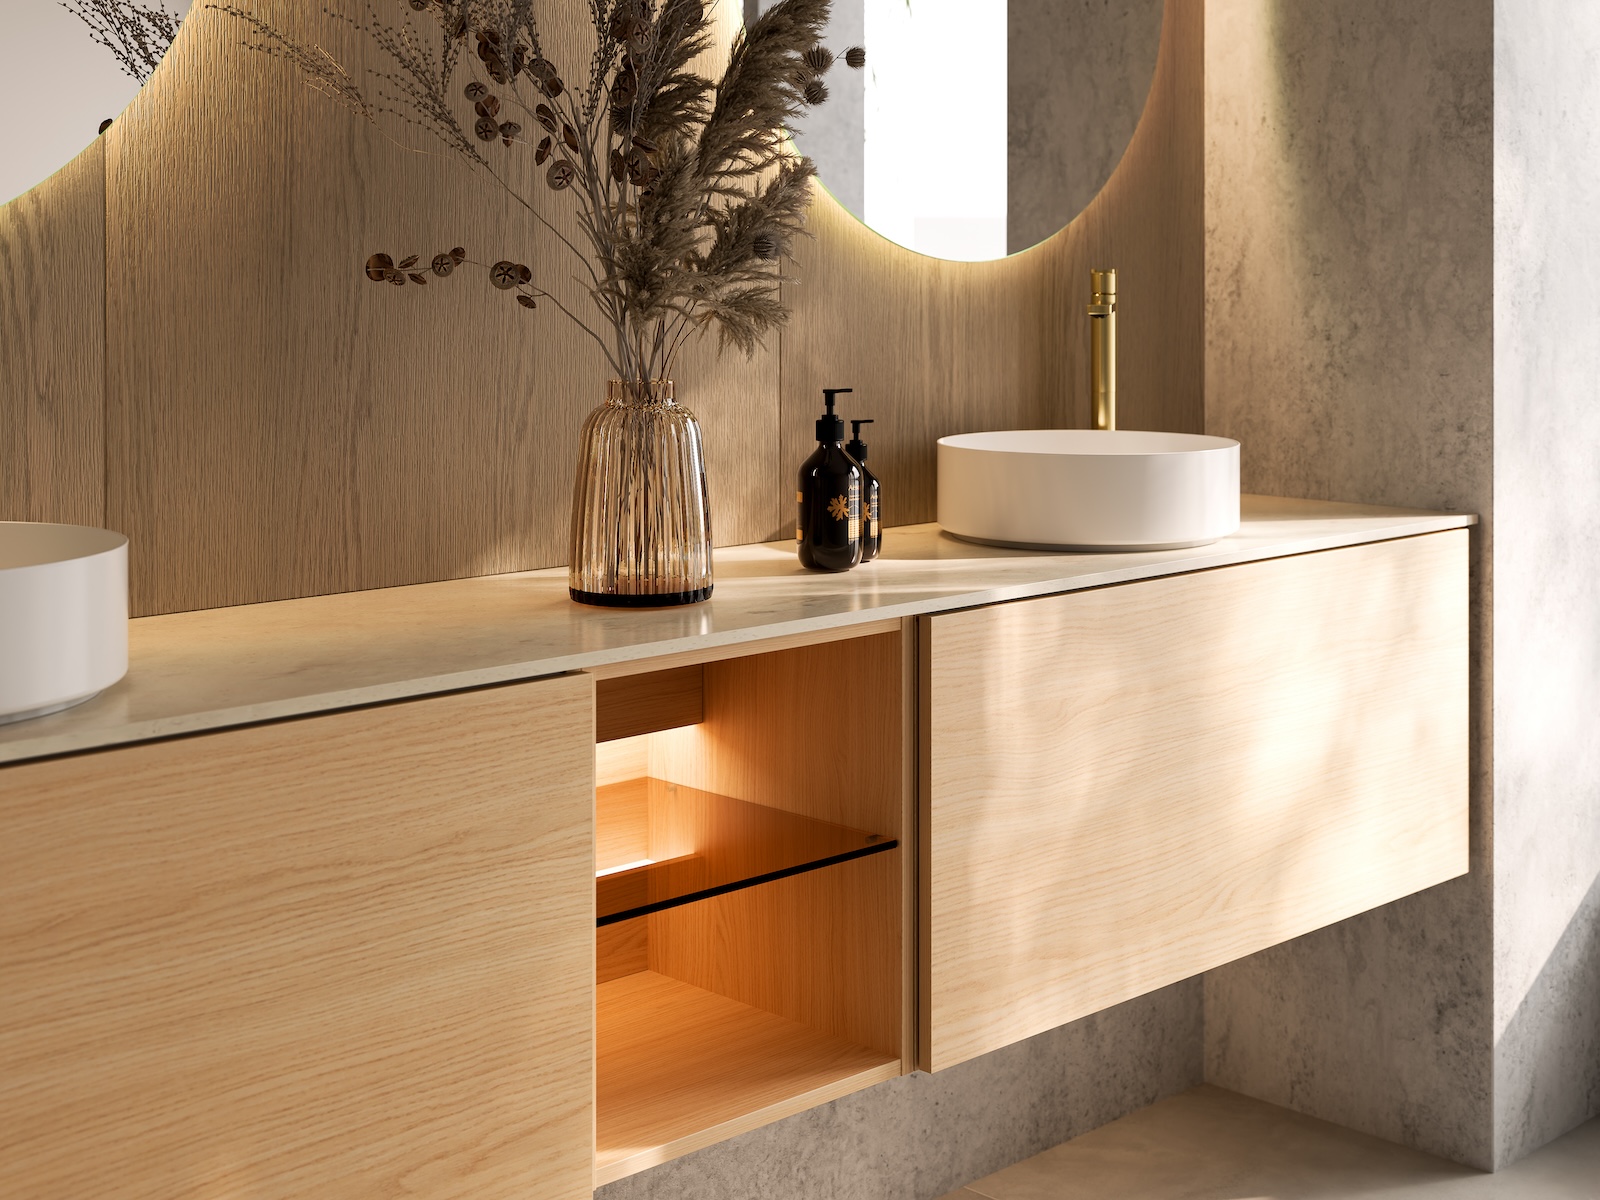 TEMAL kylpyhuone, Design, skandinaavinen kylpyhuone, vaalea tammi, allaskaappi